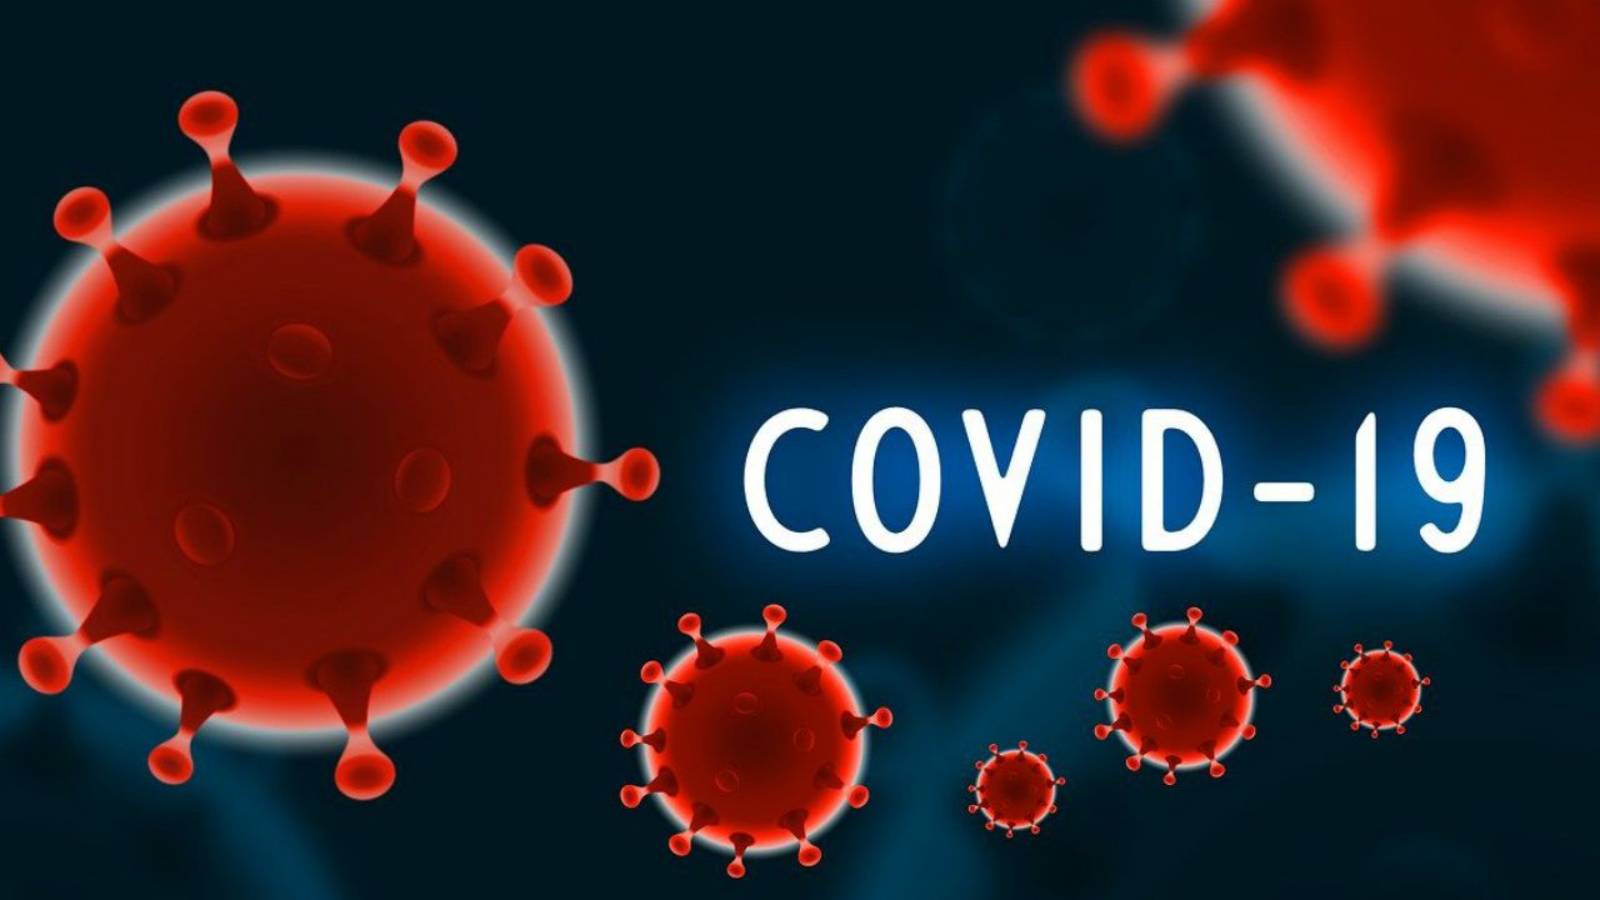 covid-19 herinfectie hms